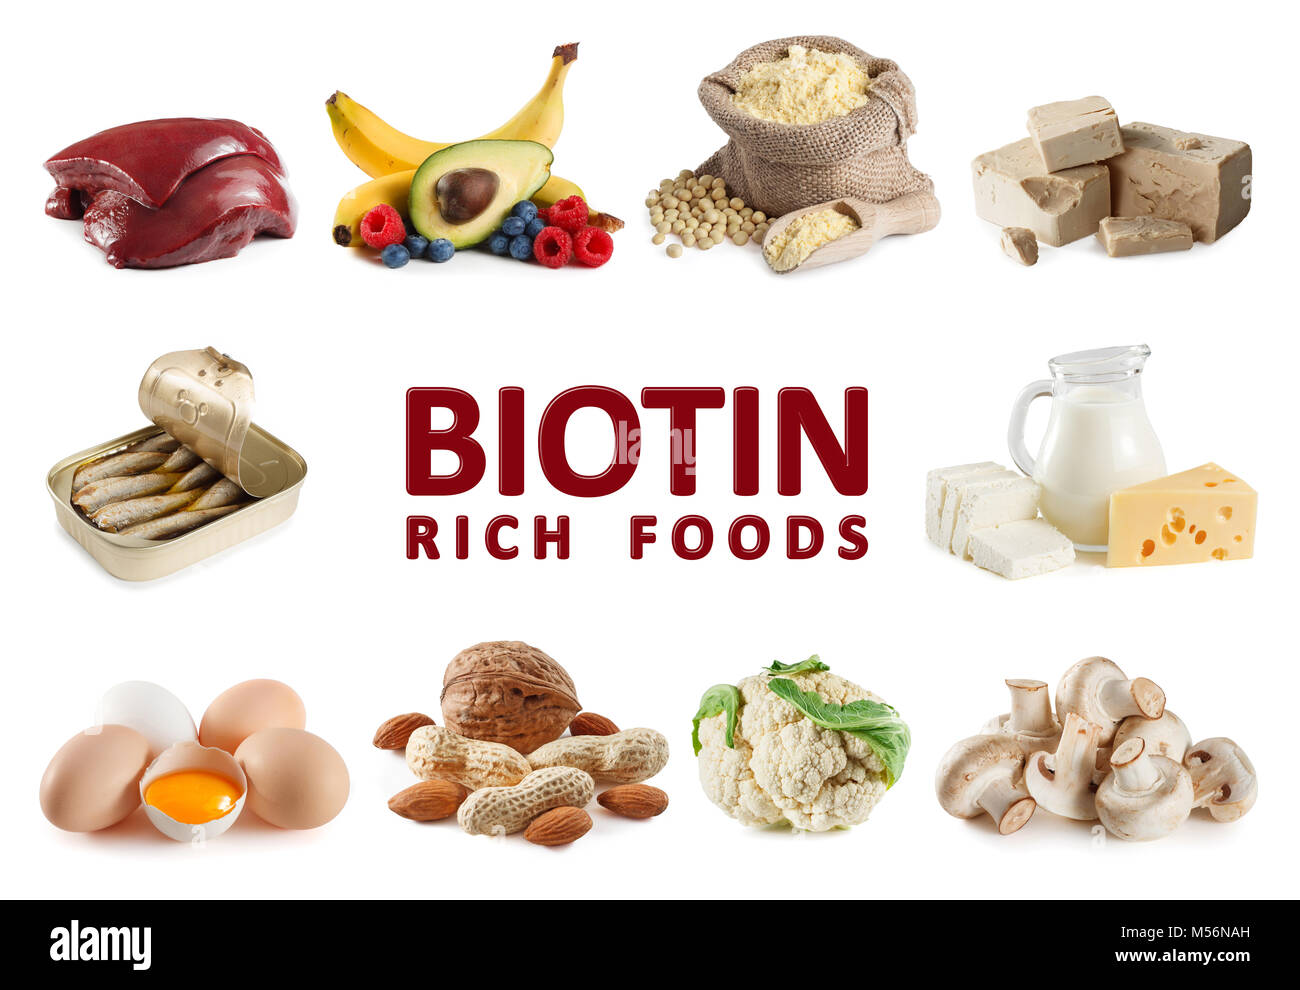 Les aliments riches en biotine (vitamine B7) comme le foie, le jaune d'oeufs, la levure, les sardines, farine de soja, lait, fromage, fromage cottage, la banane, l'avocat, bleuets, raspber Banque D'Images